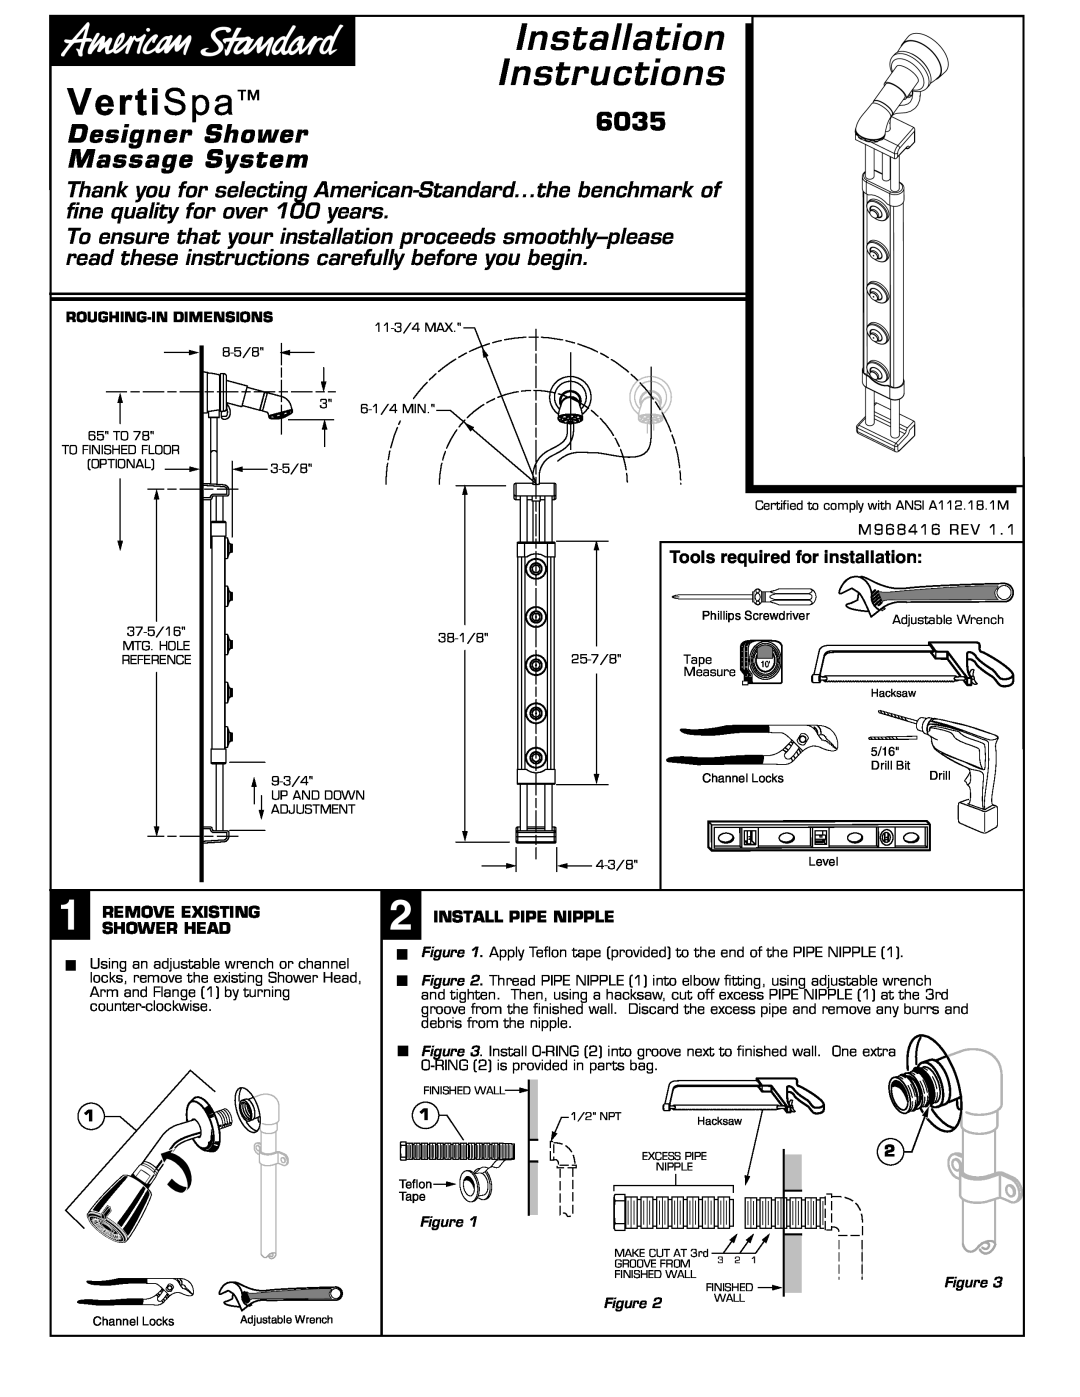 American Standard 6035 installation instructions Designer Shower, Massage System, Installation Instructions 